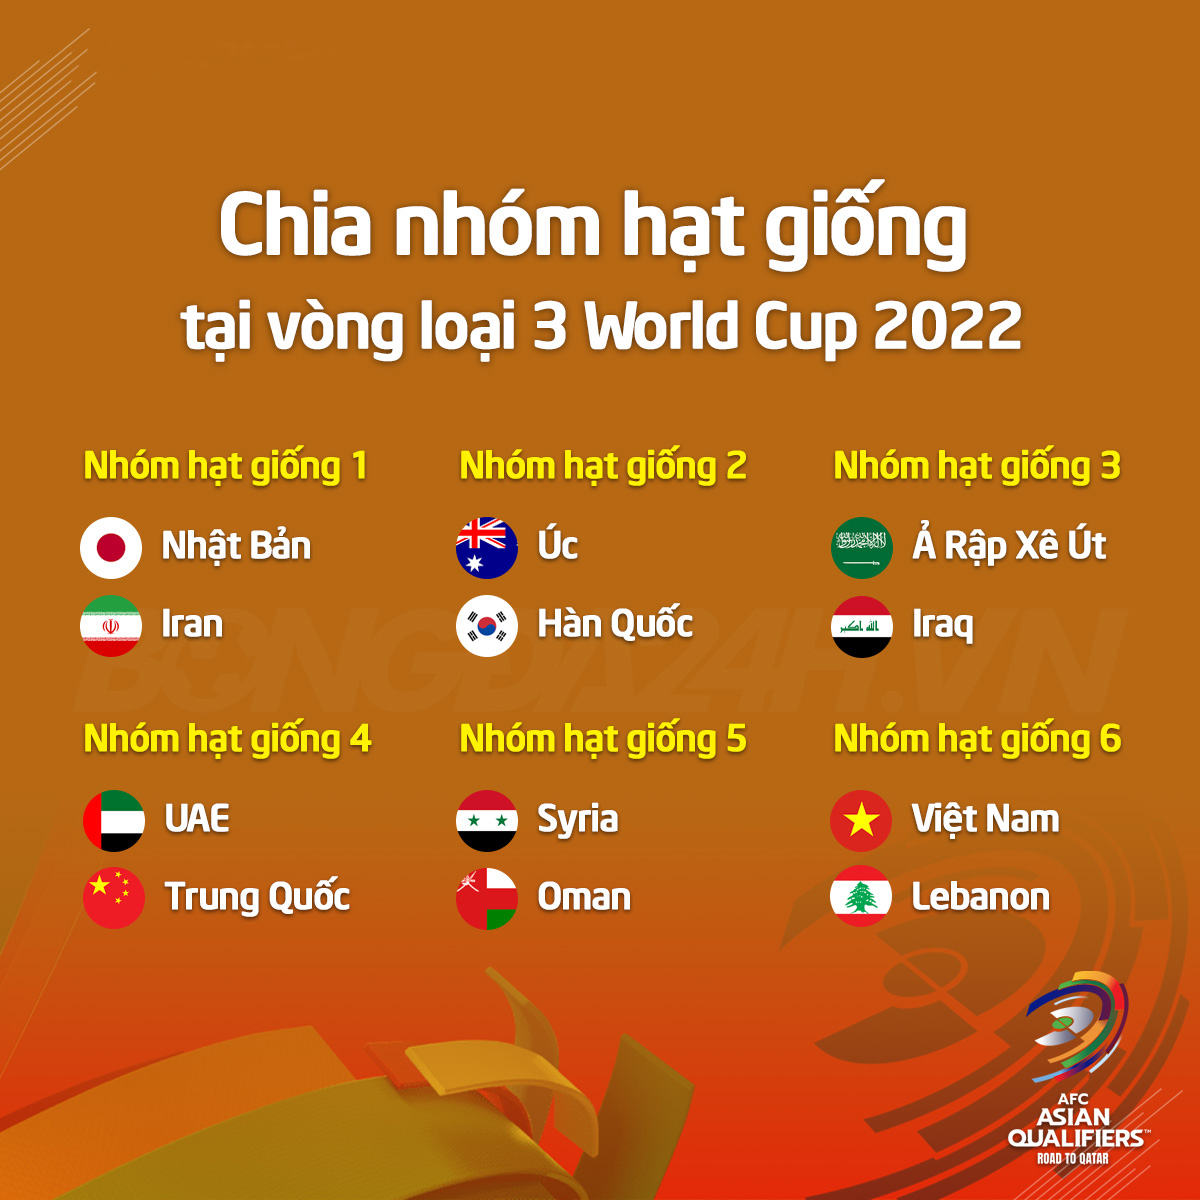 Xếp hạng hạt giống ở vòng loại cuối World Cup 2022 khu vực châu Á